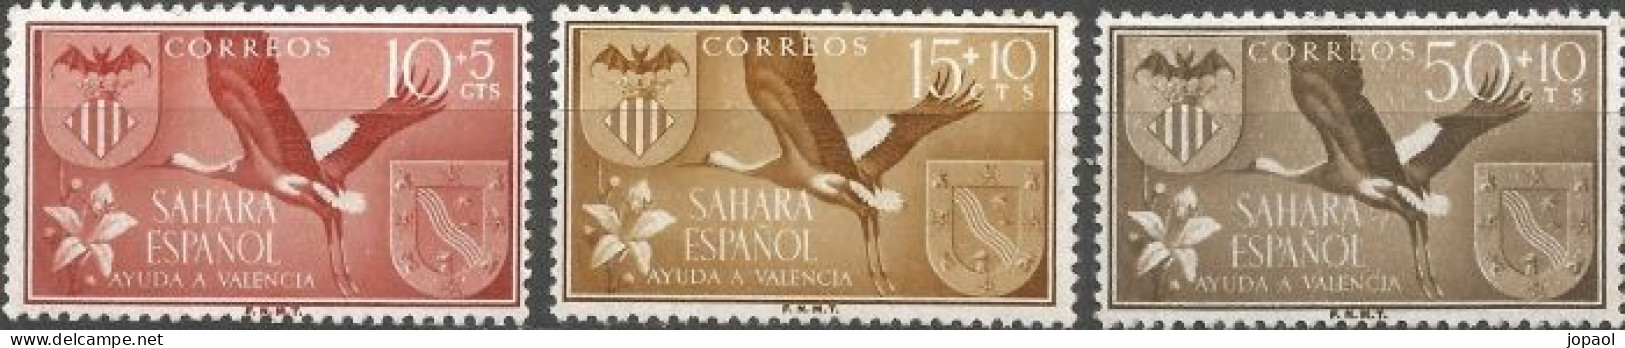 Ayuda A Valencia - Sahara Español 1958 - Sahara Español